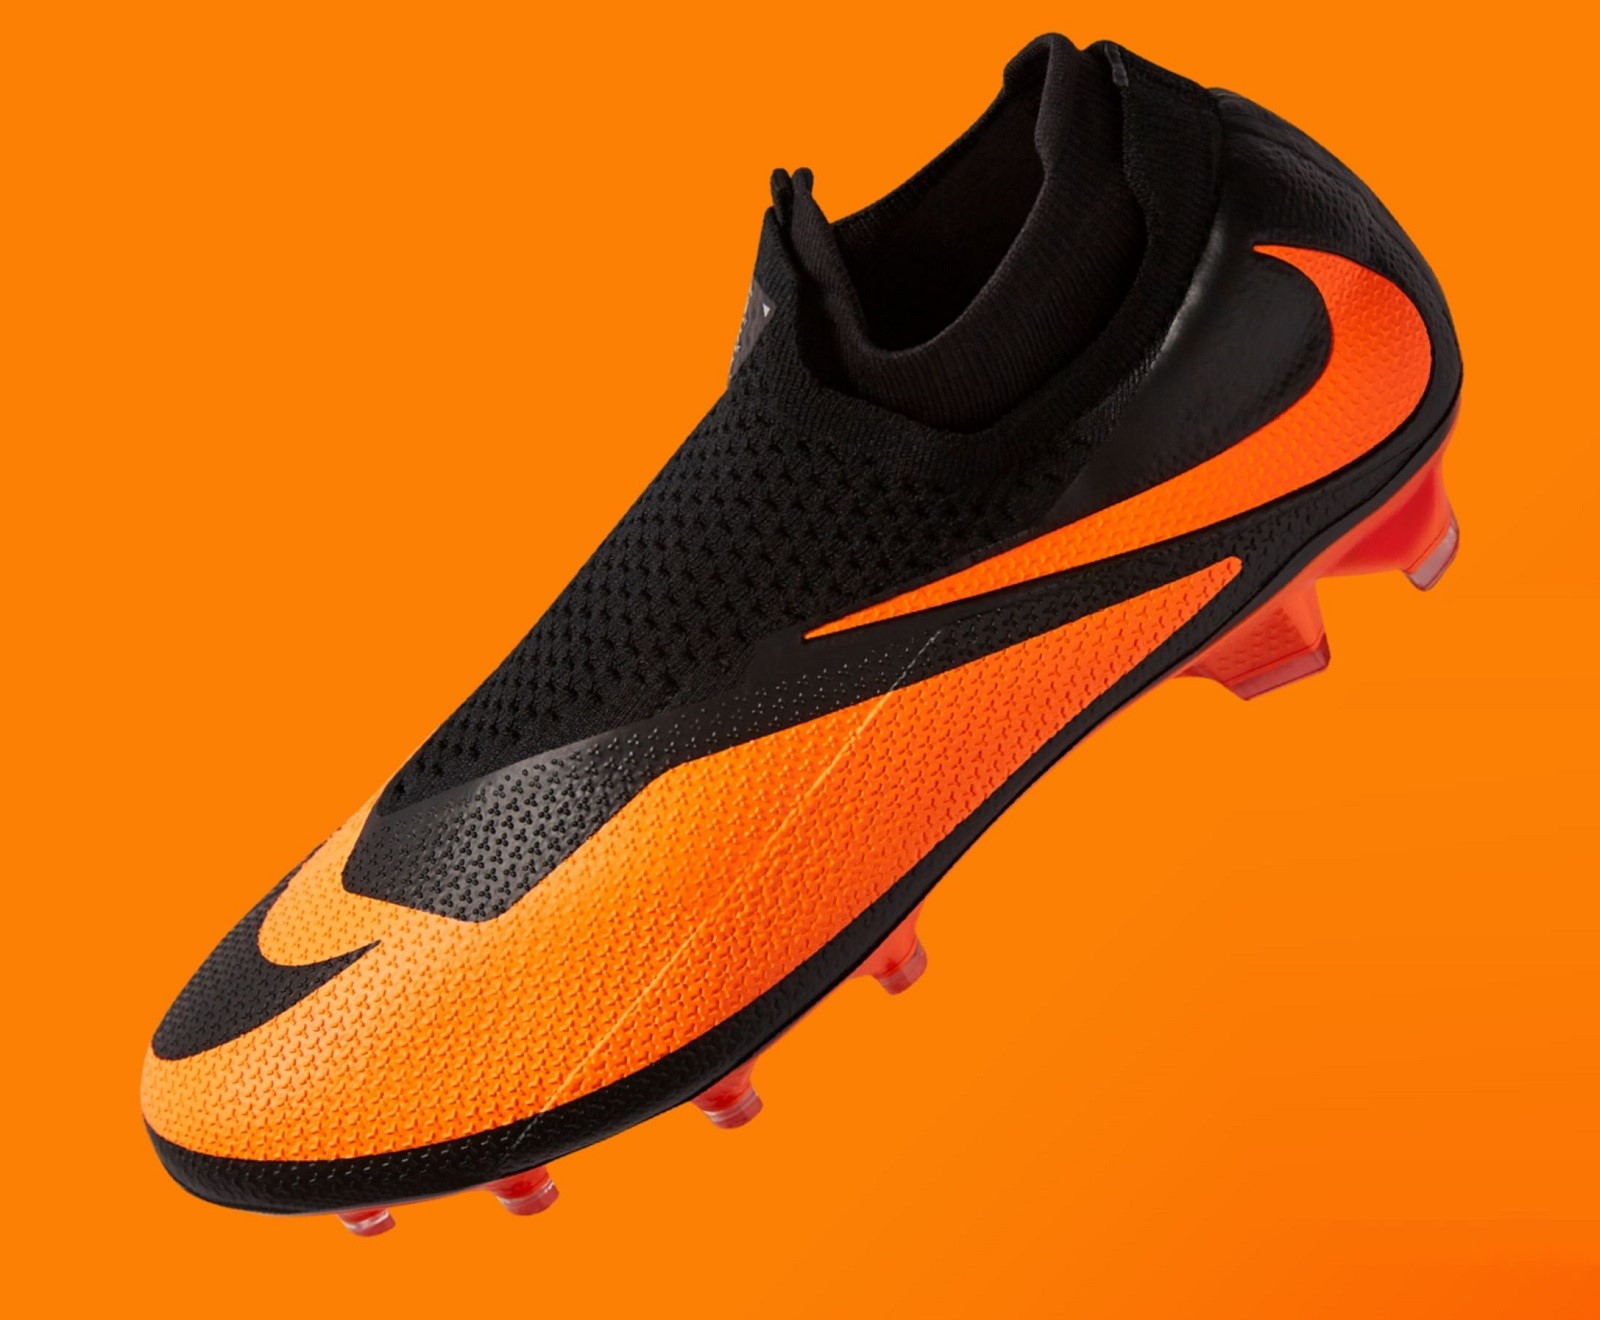 Nike Hypervenom x Phantom Vision Released | Soccer Cleats 101